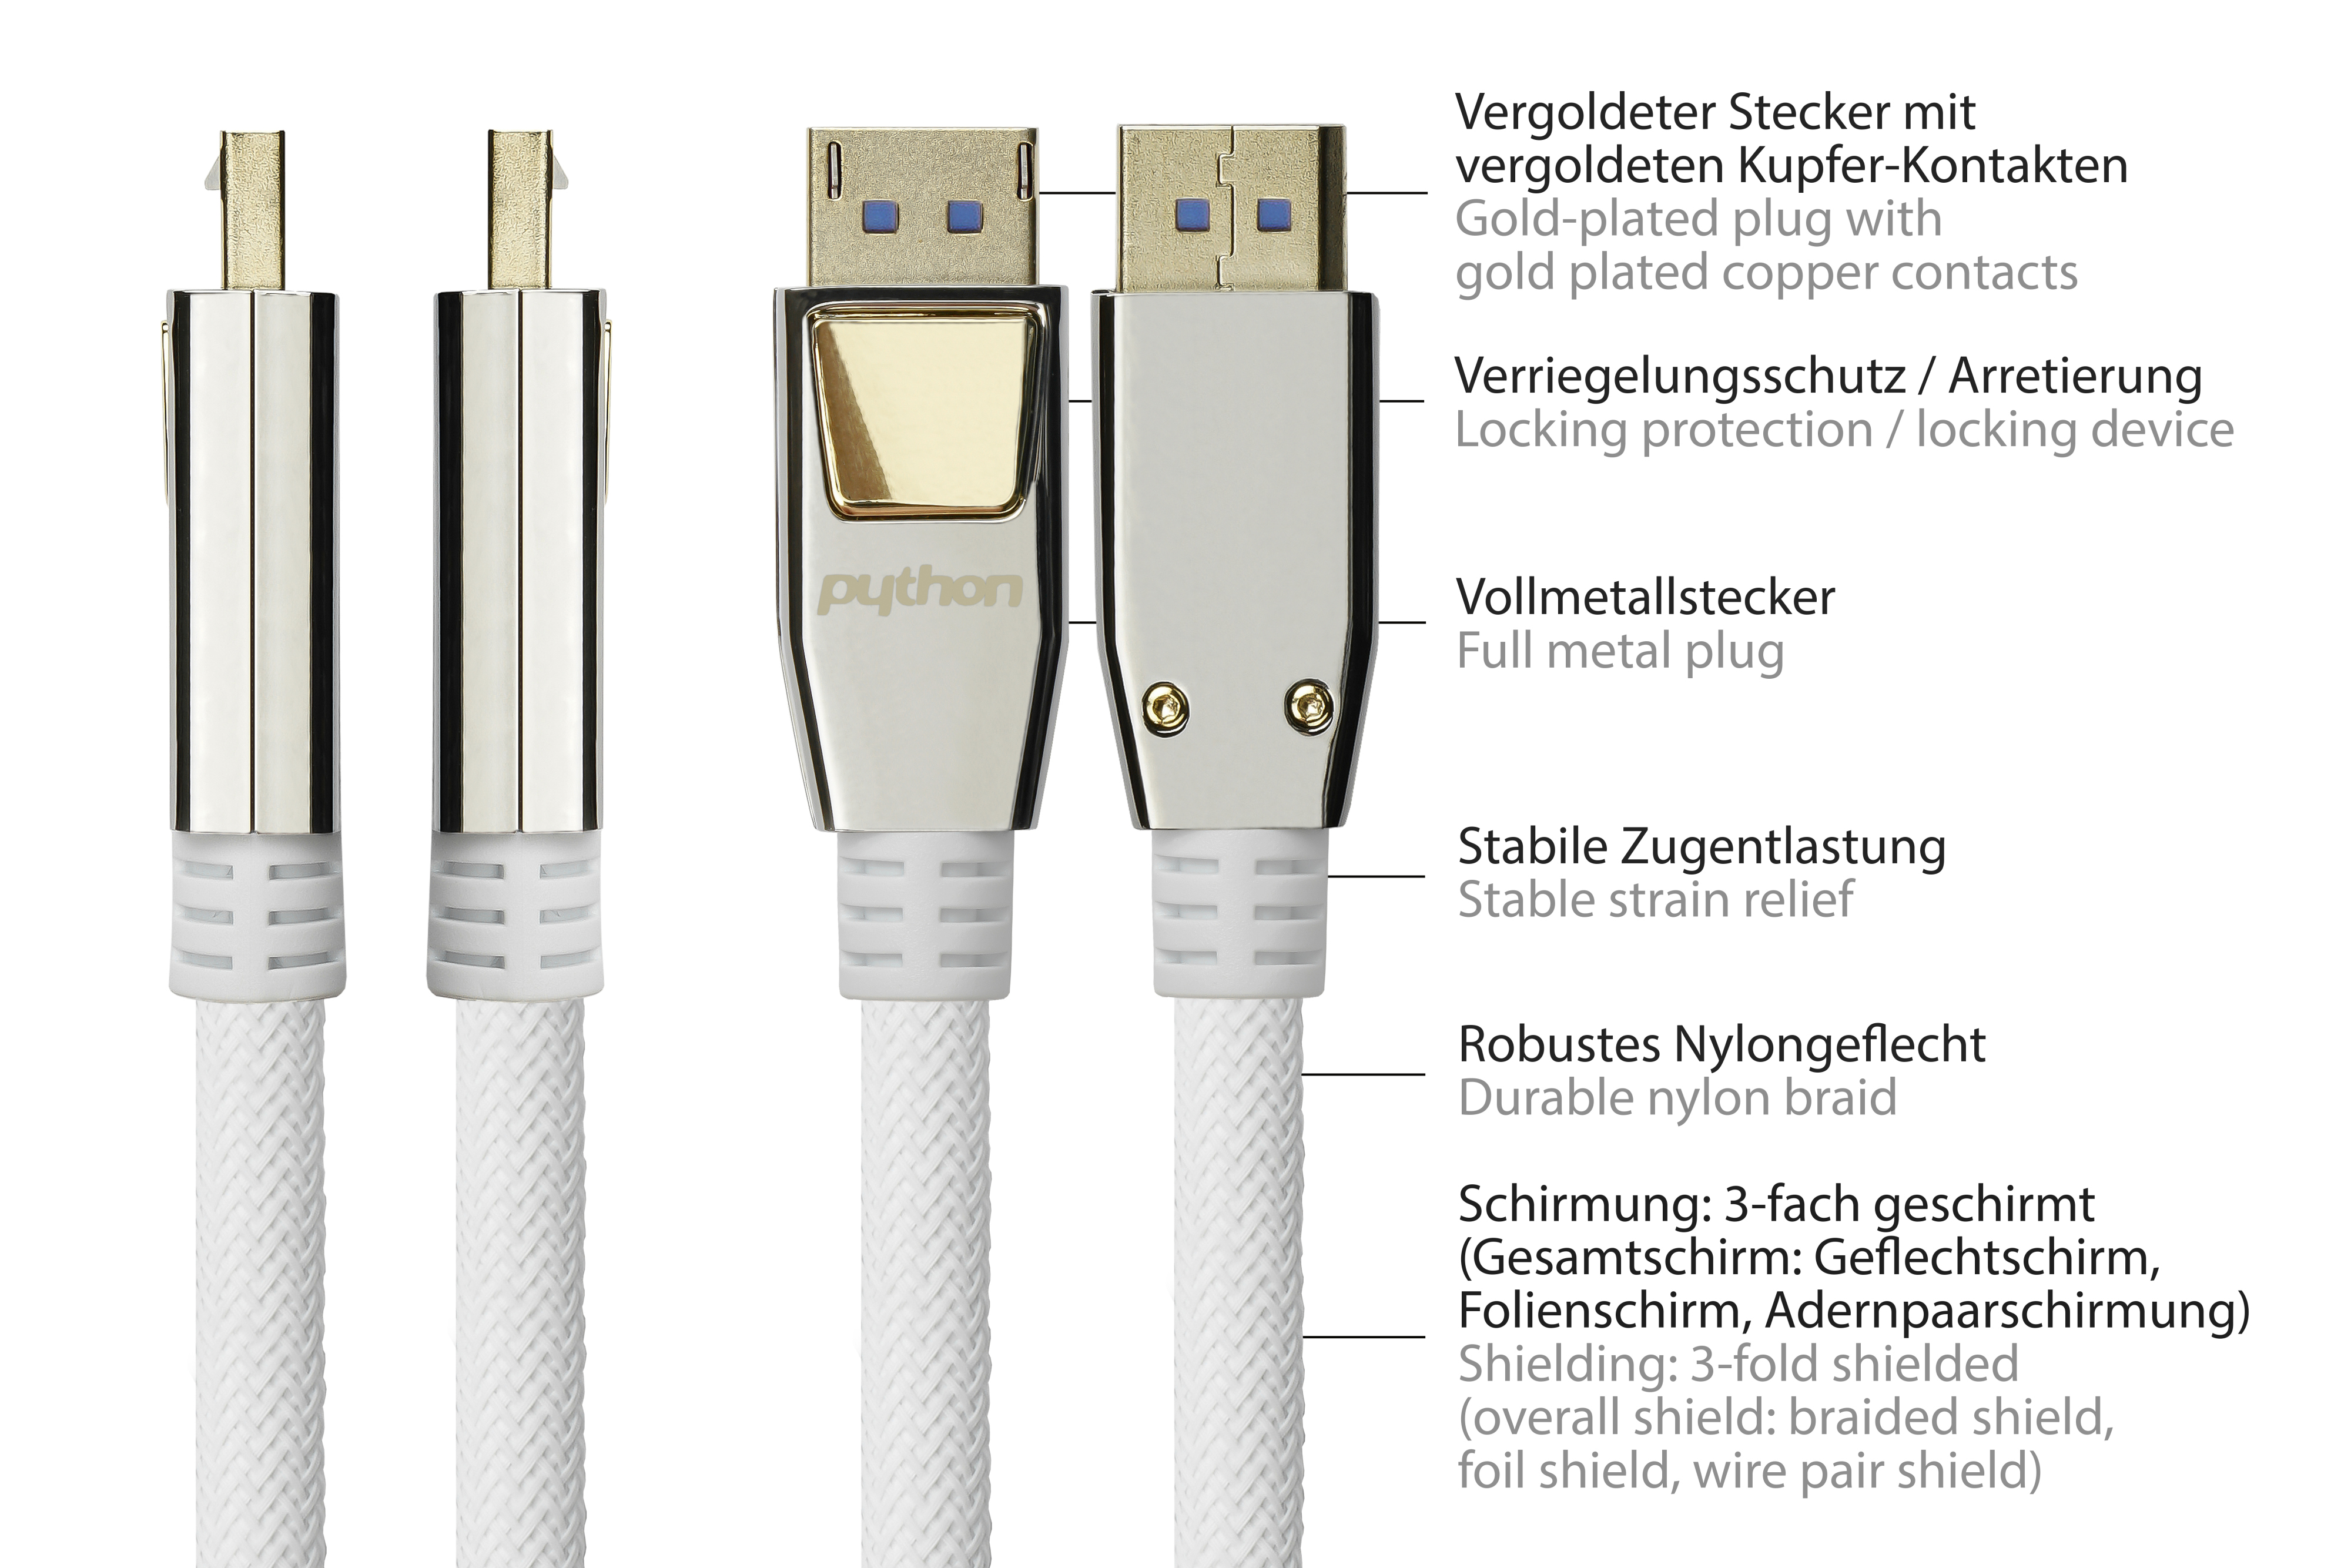 Anschlusskabel weiß, Nylongeflecht m Displayport, vergoldete CU, Kontakte, 2.0, 0,5m, 54 PYTHON Vollmetallstecker, Gbit/s, 0,5